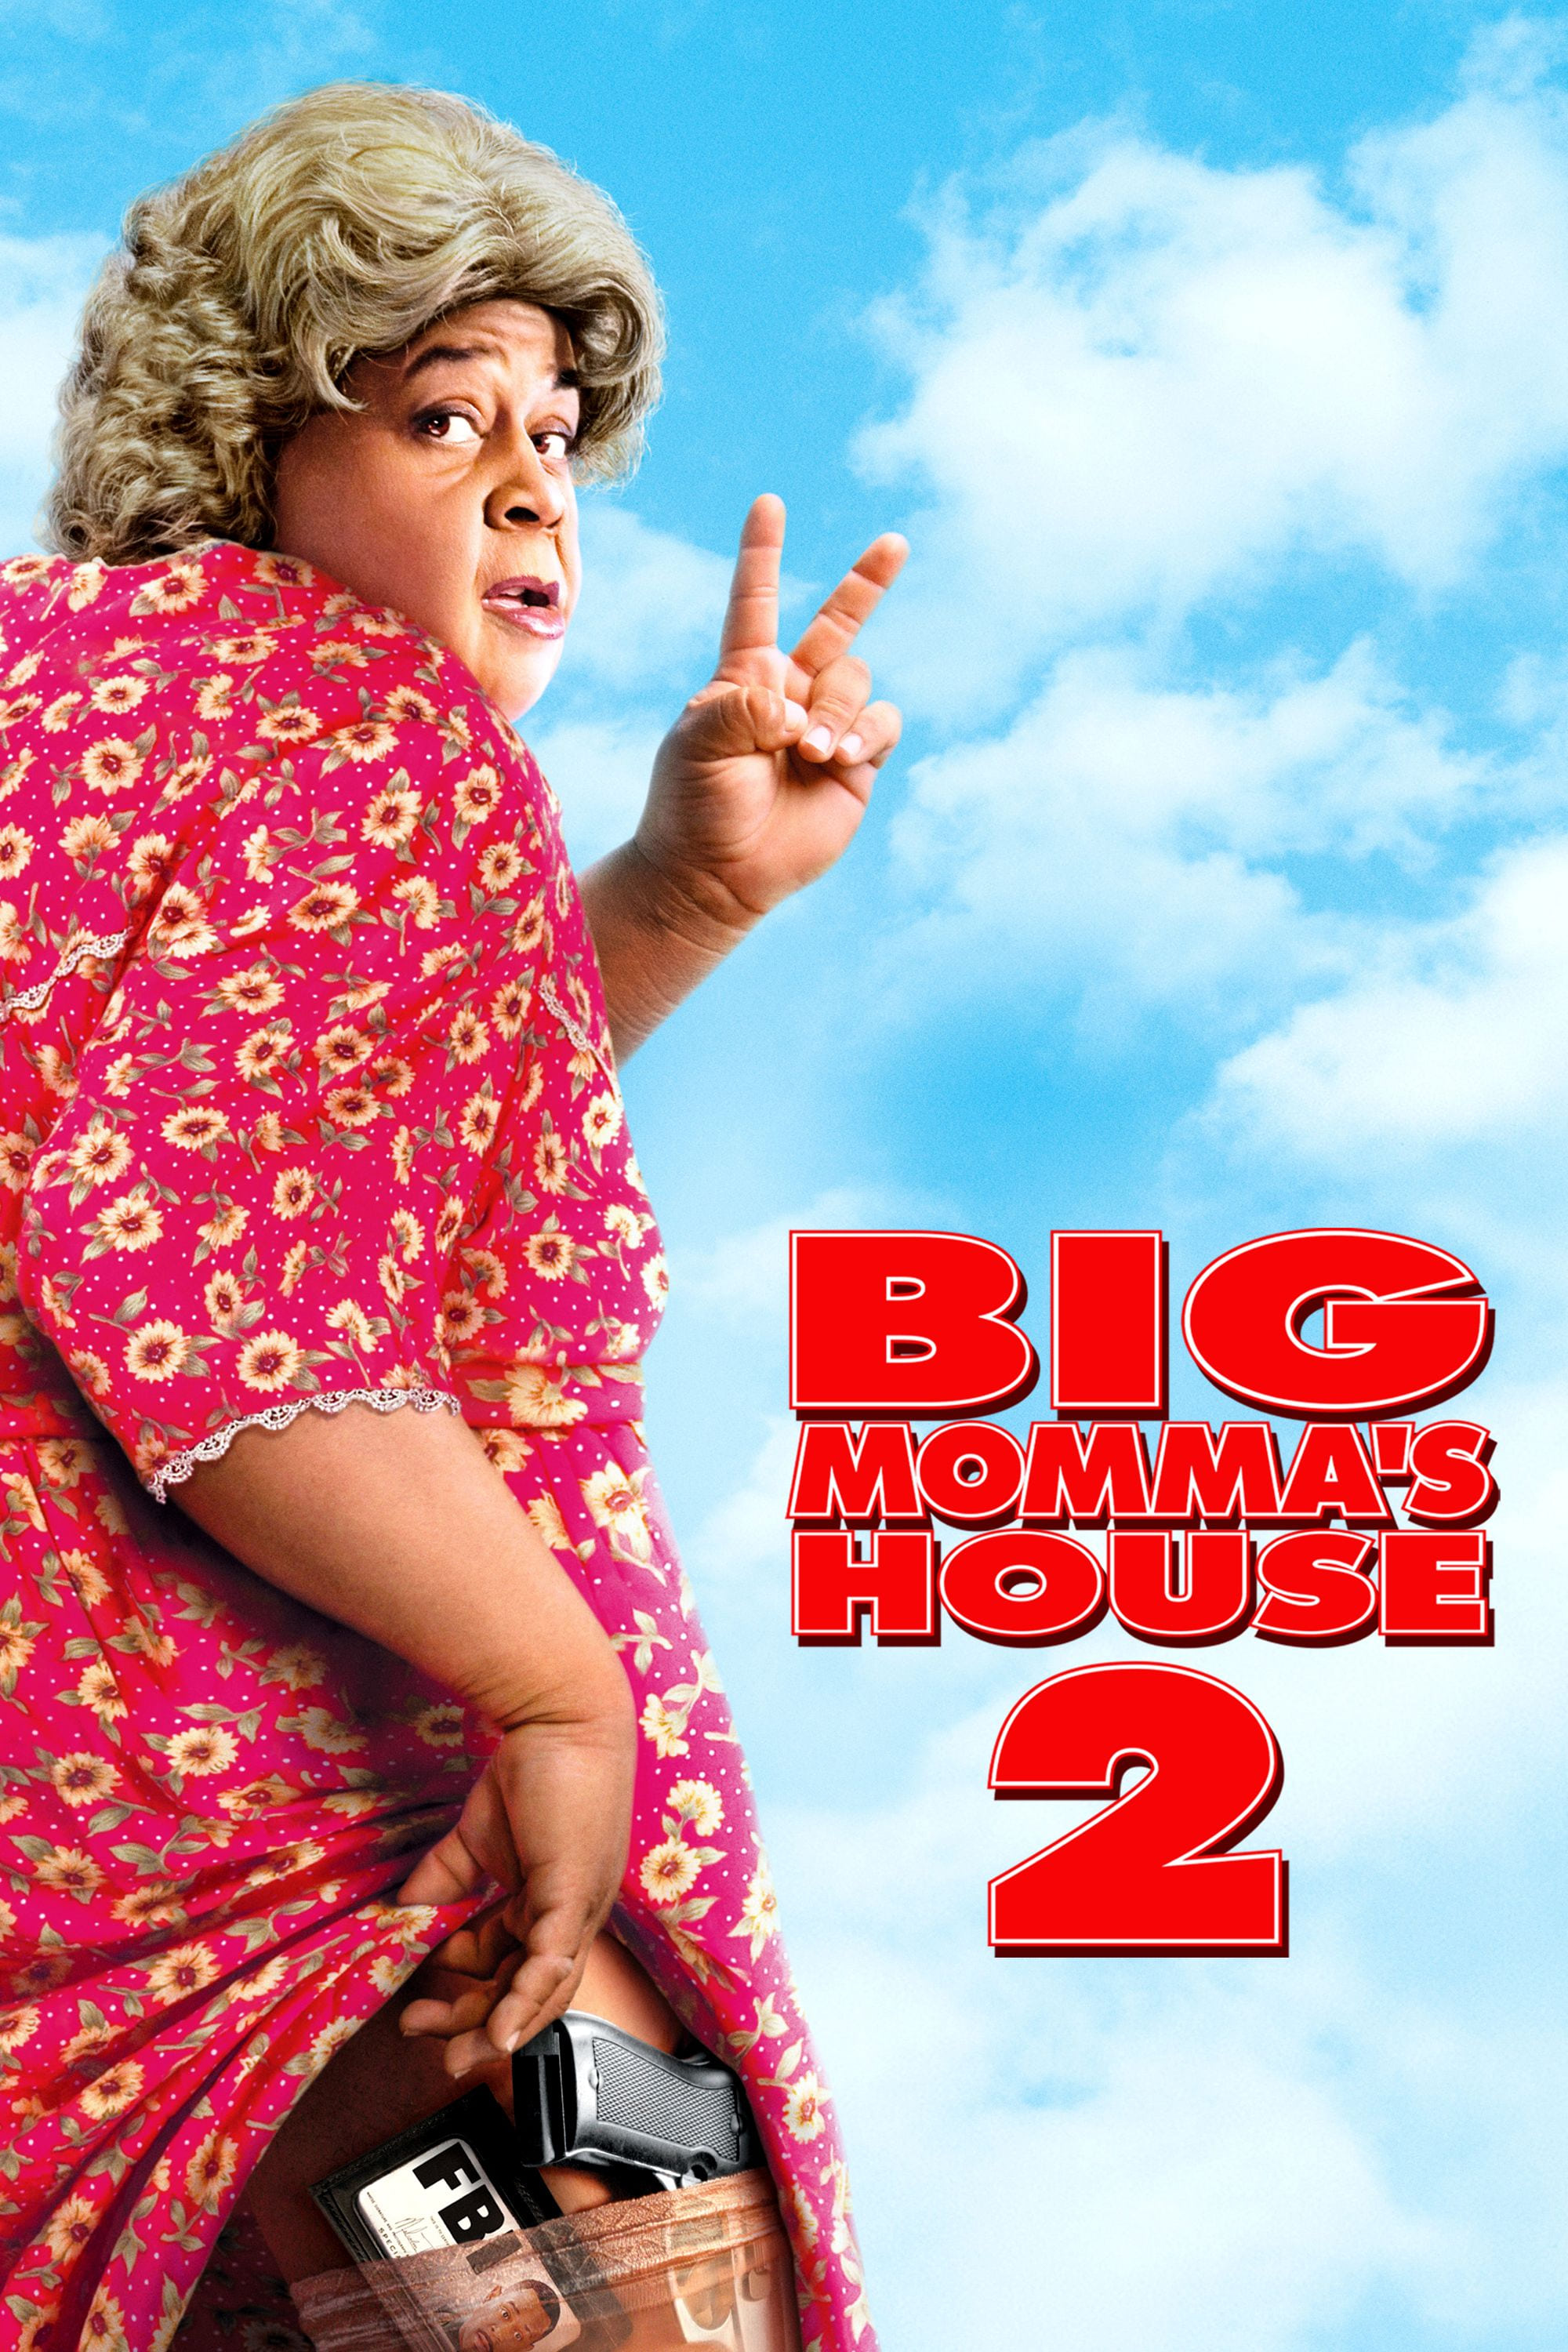 ビッグママ・ハウス2 の映画レビュー一覧・感想・評価 - Yahoo!検索